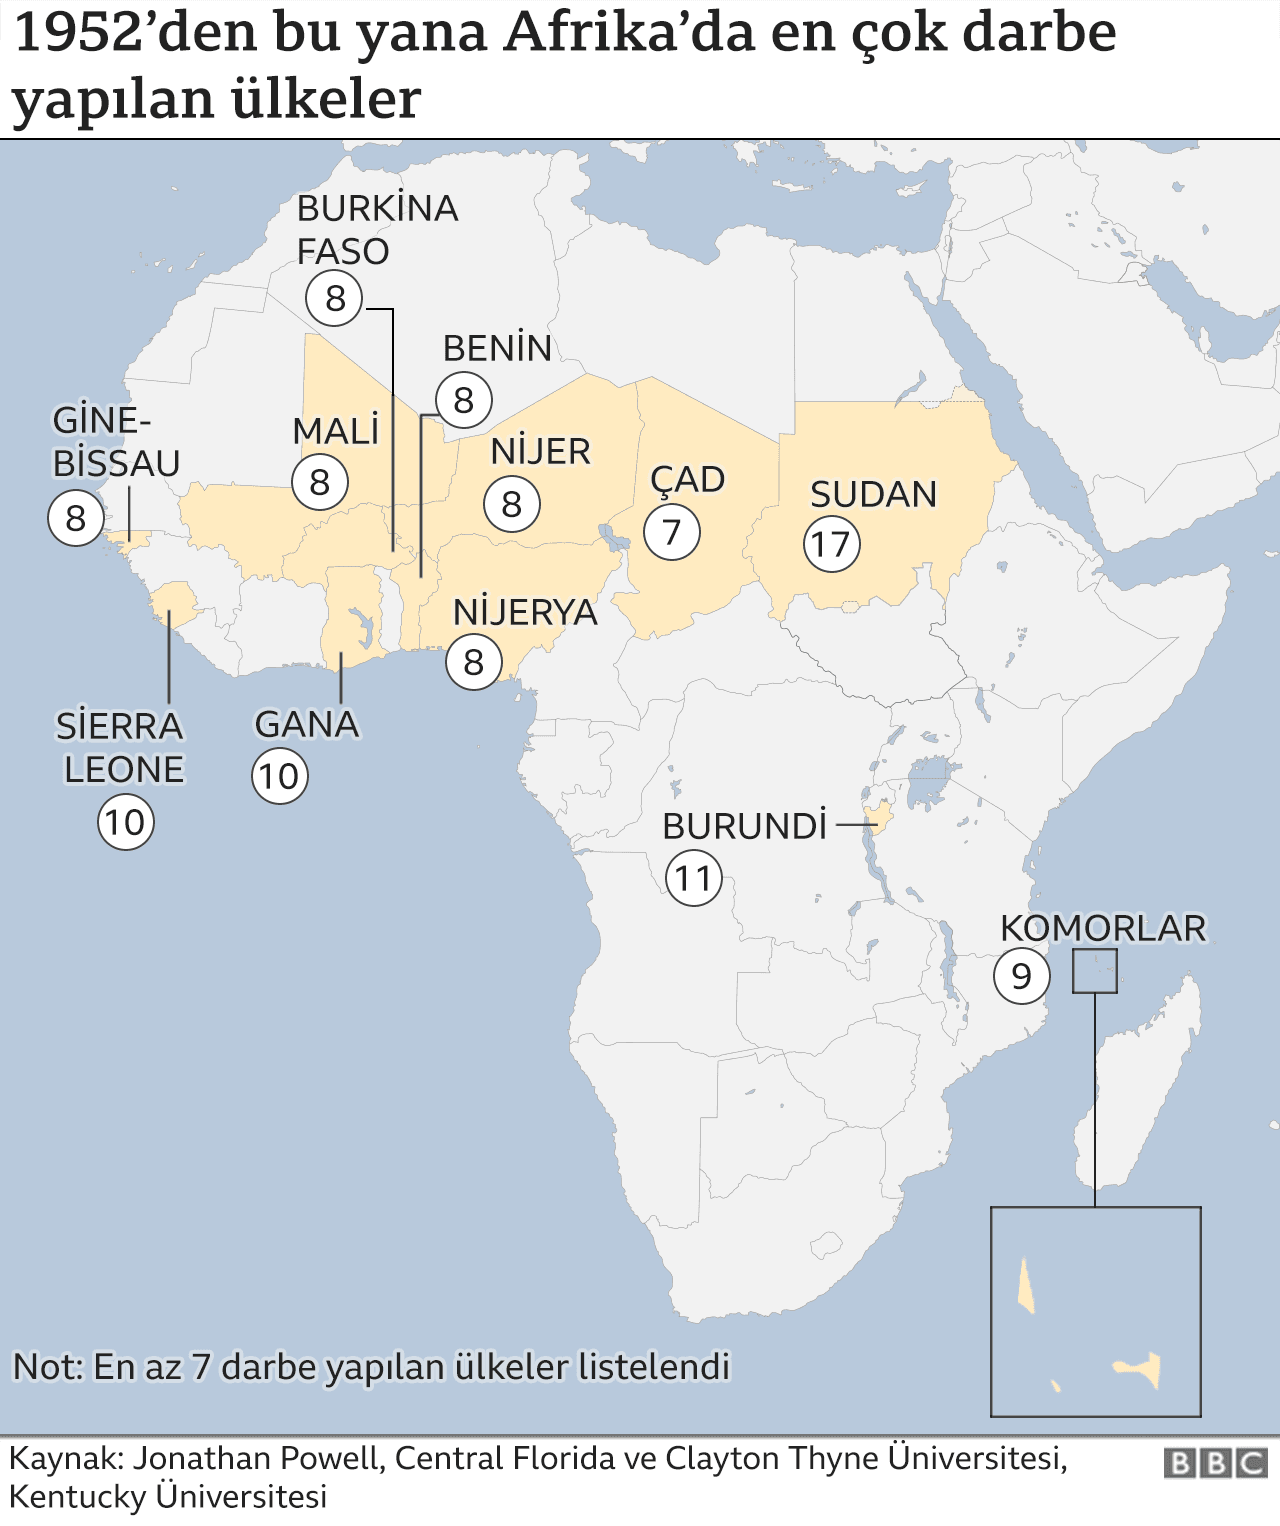 Afrika'da darbe yapılan ülkeler